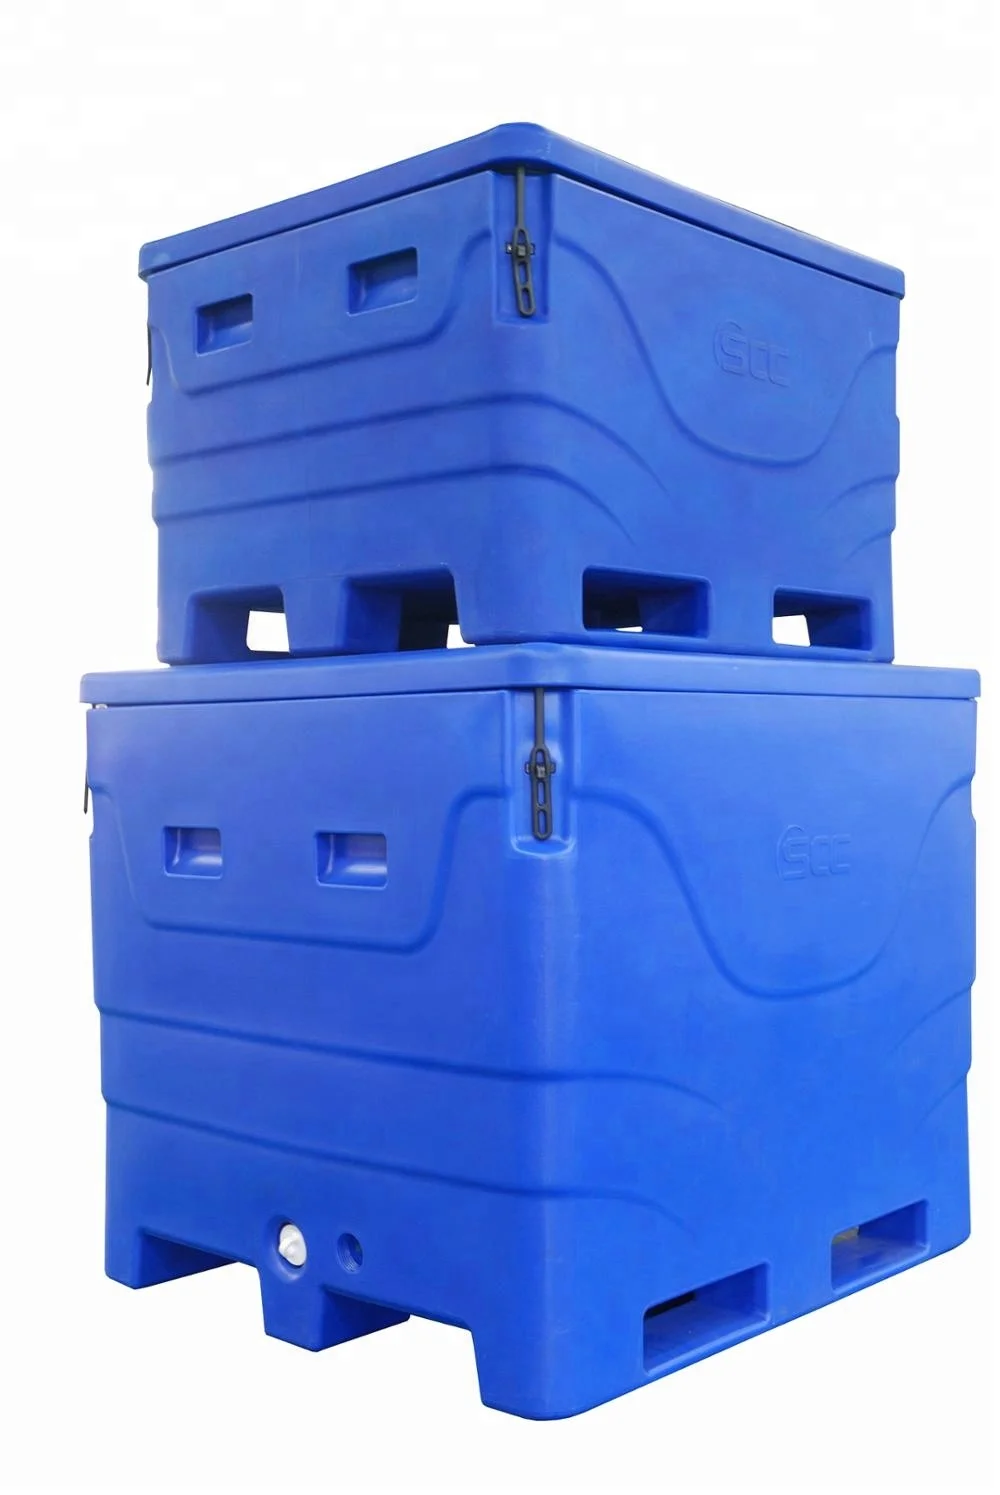 Plastic Fish Box (50 kilo) - 890 x 560 x 236 - GW Containers